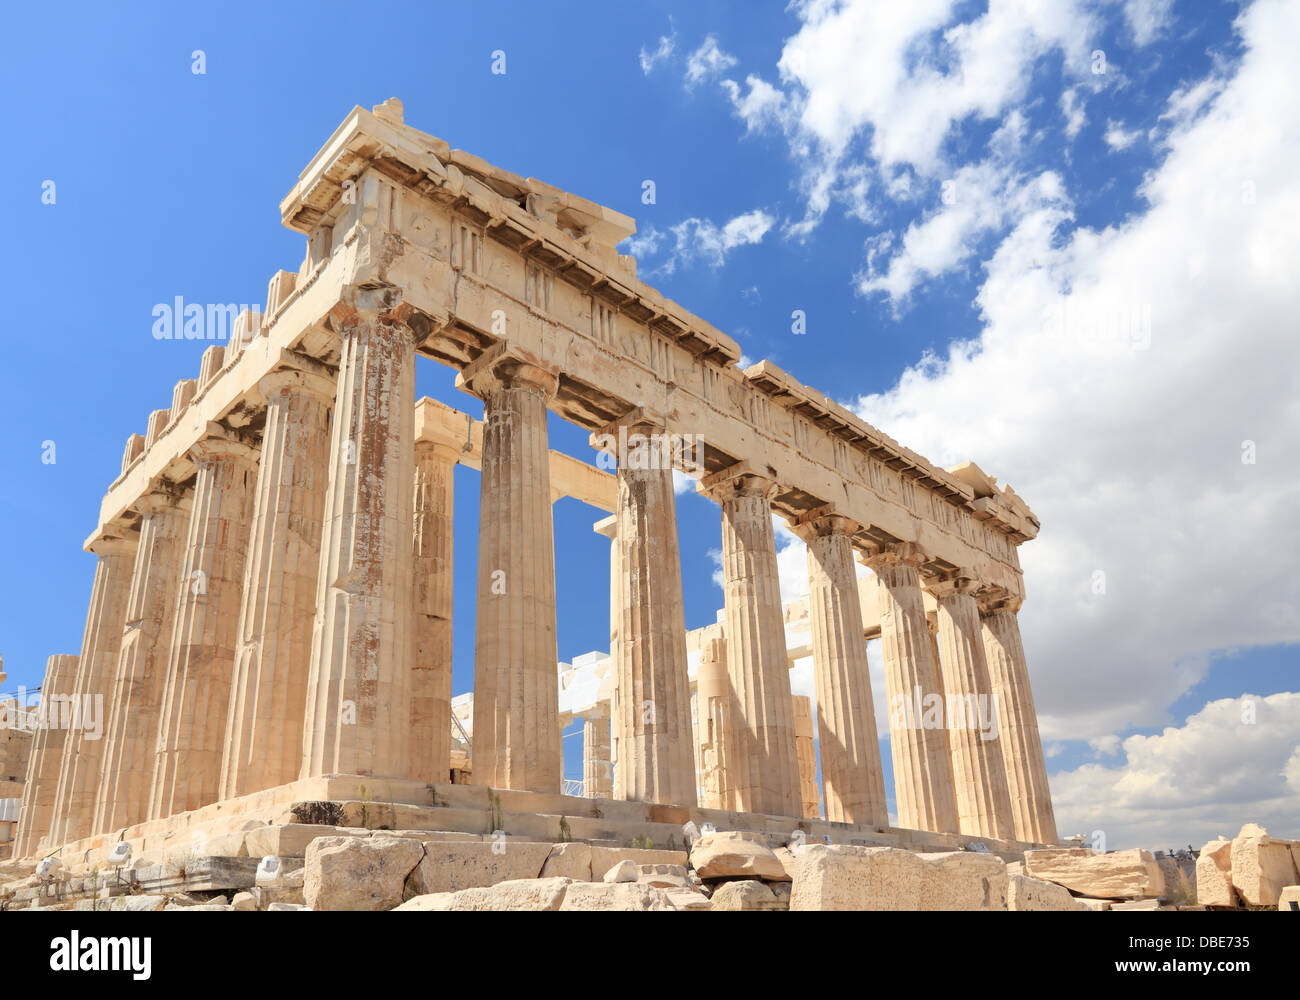 Parthenon in the Acropolis, Athens, Greece Stock Photo